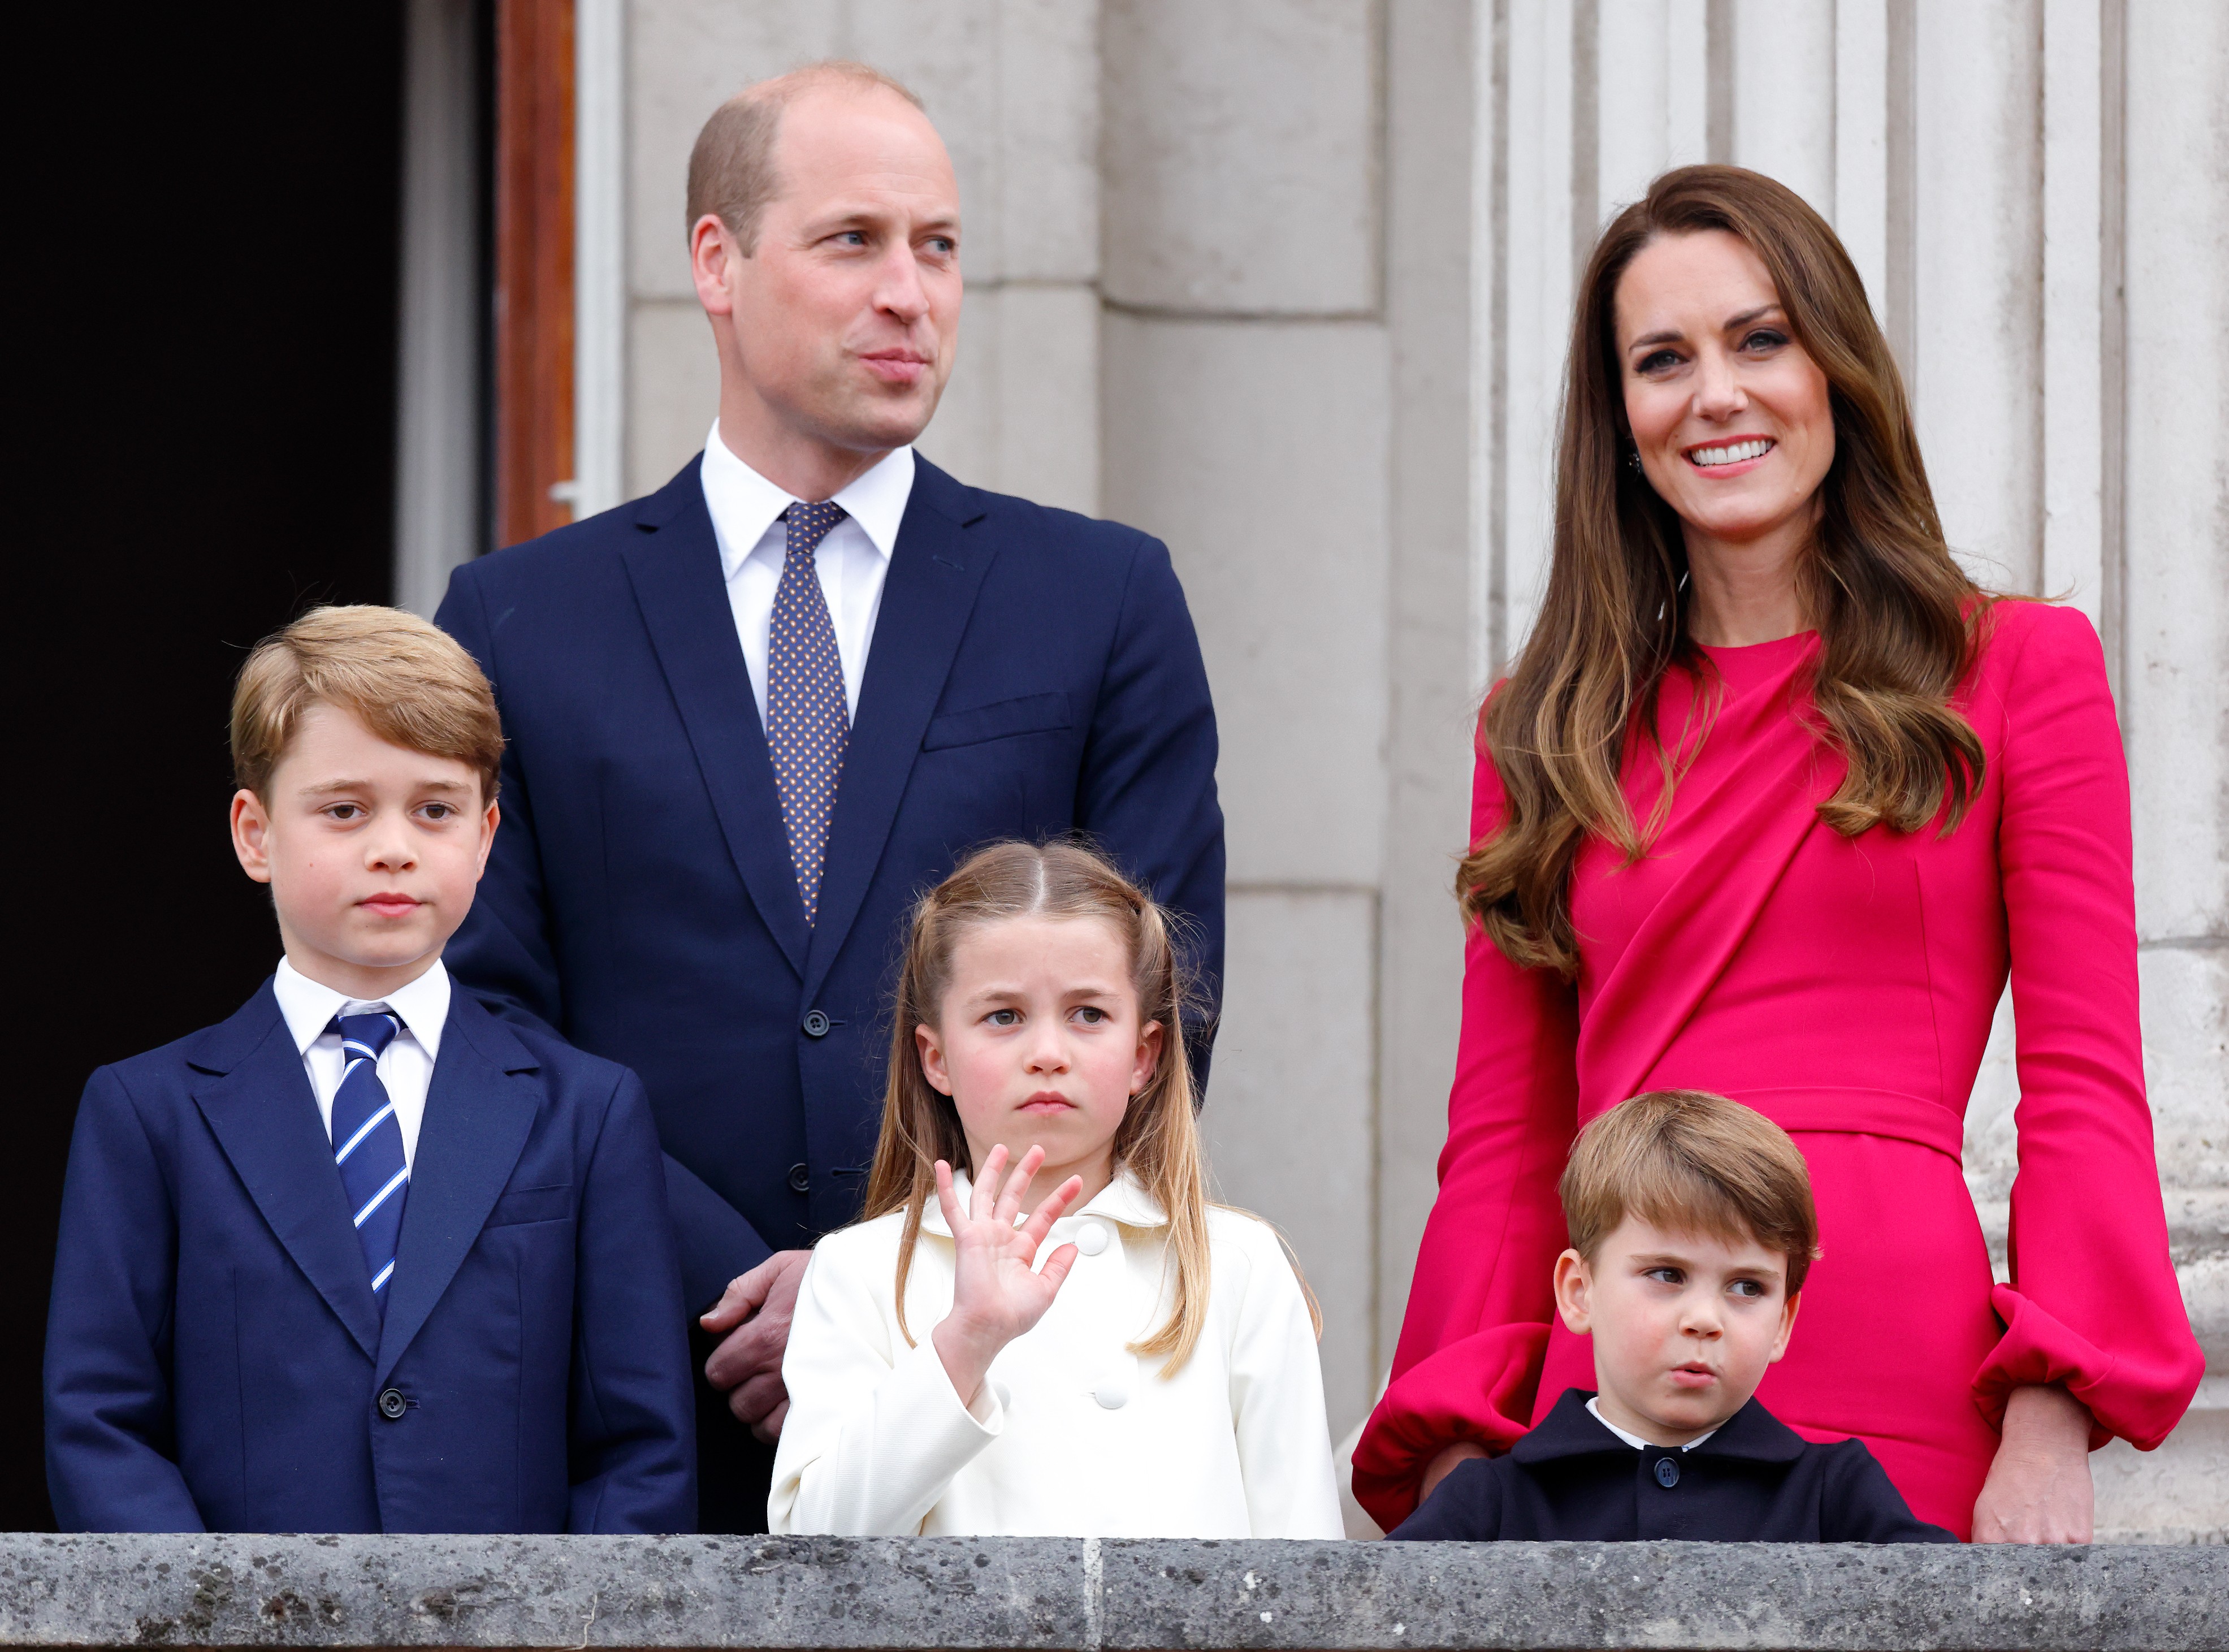 O Príncipe Wlliam e a Duquesa Kate Middleton com os três filhos (Príncipe George, Princesa Charlotte e Príncipe Louis) em evento celebrando os 70 anos do reinado da Rainha Elizabeth II (Foto: Getty Images)